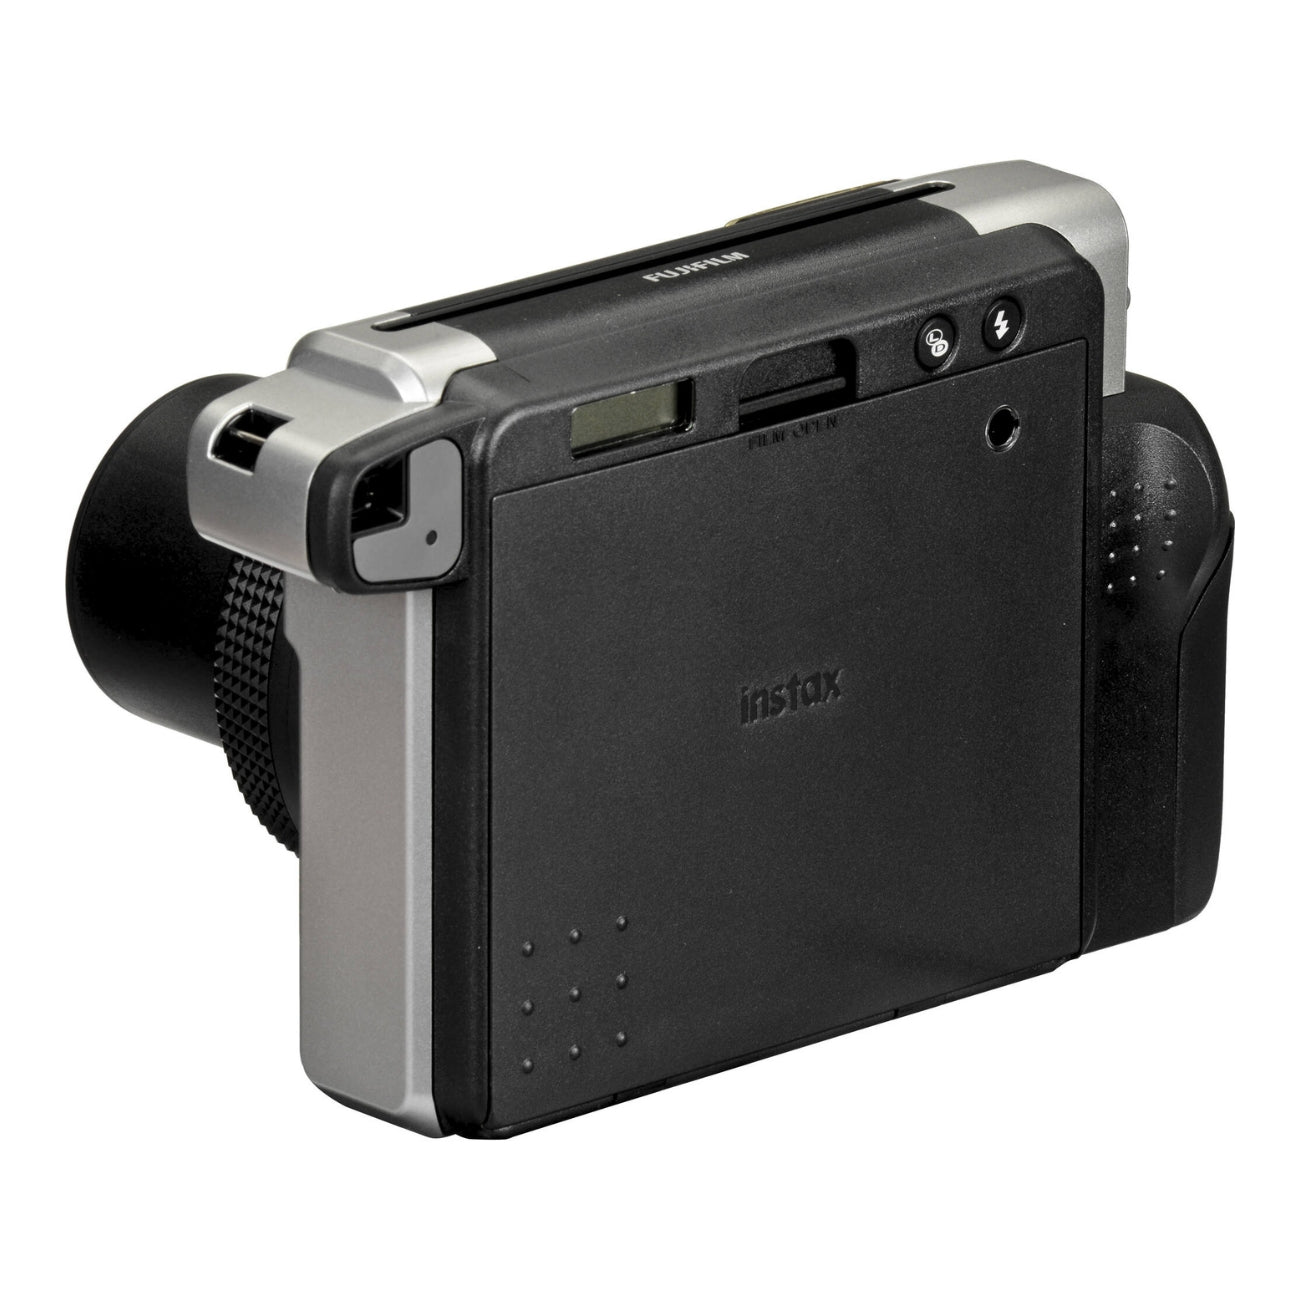 Fujifilm instax 300 pour des photos wide modernes et larges